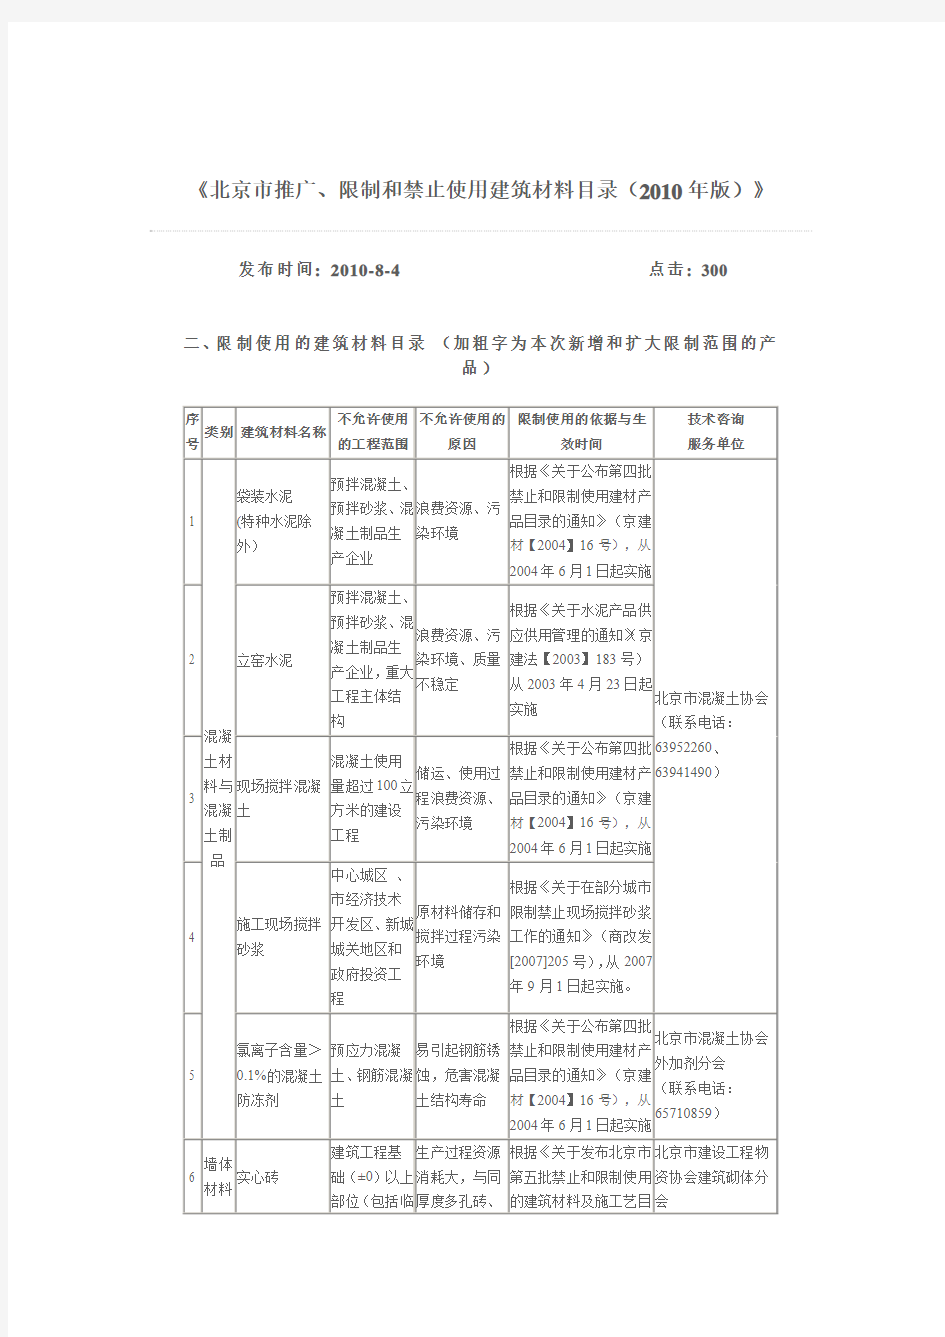 北京市禁止和限制使用的建筑材料2010版